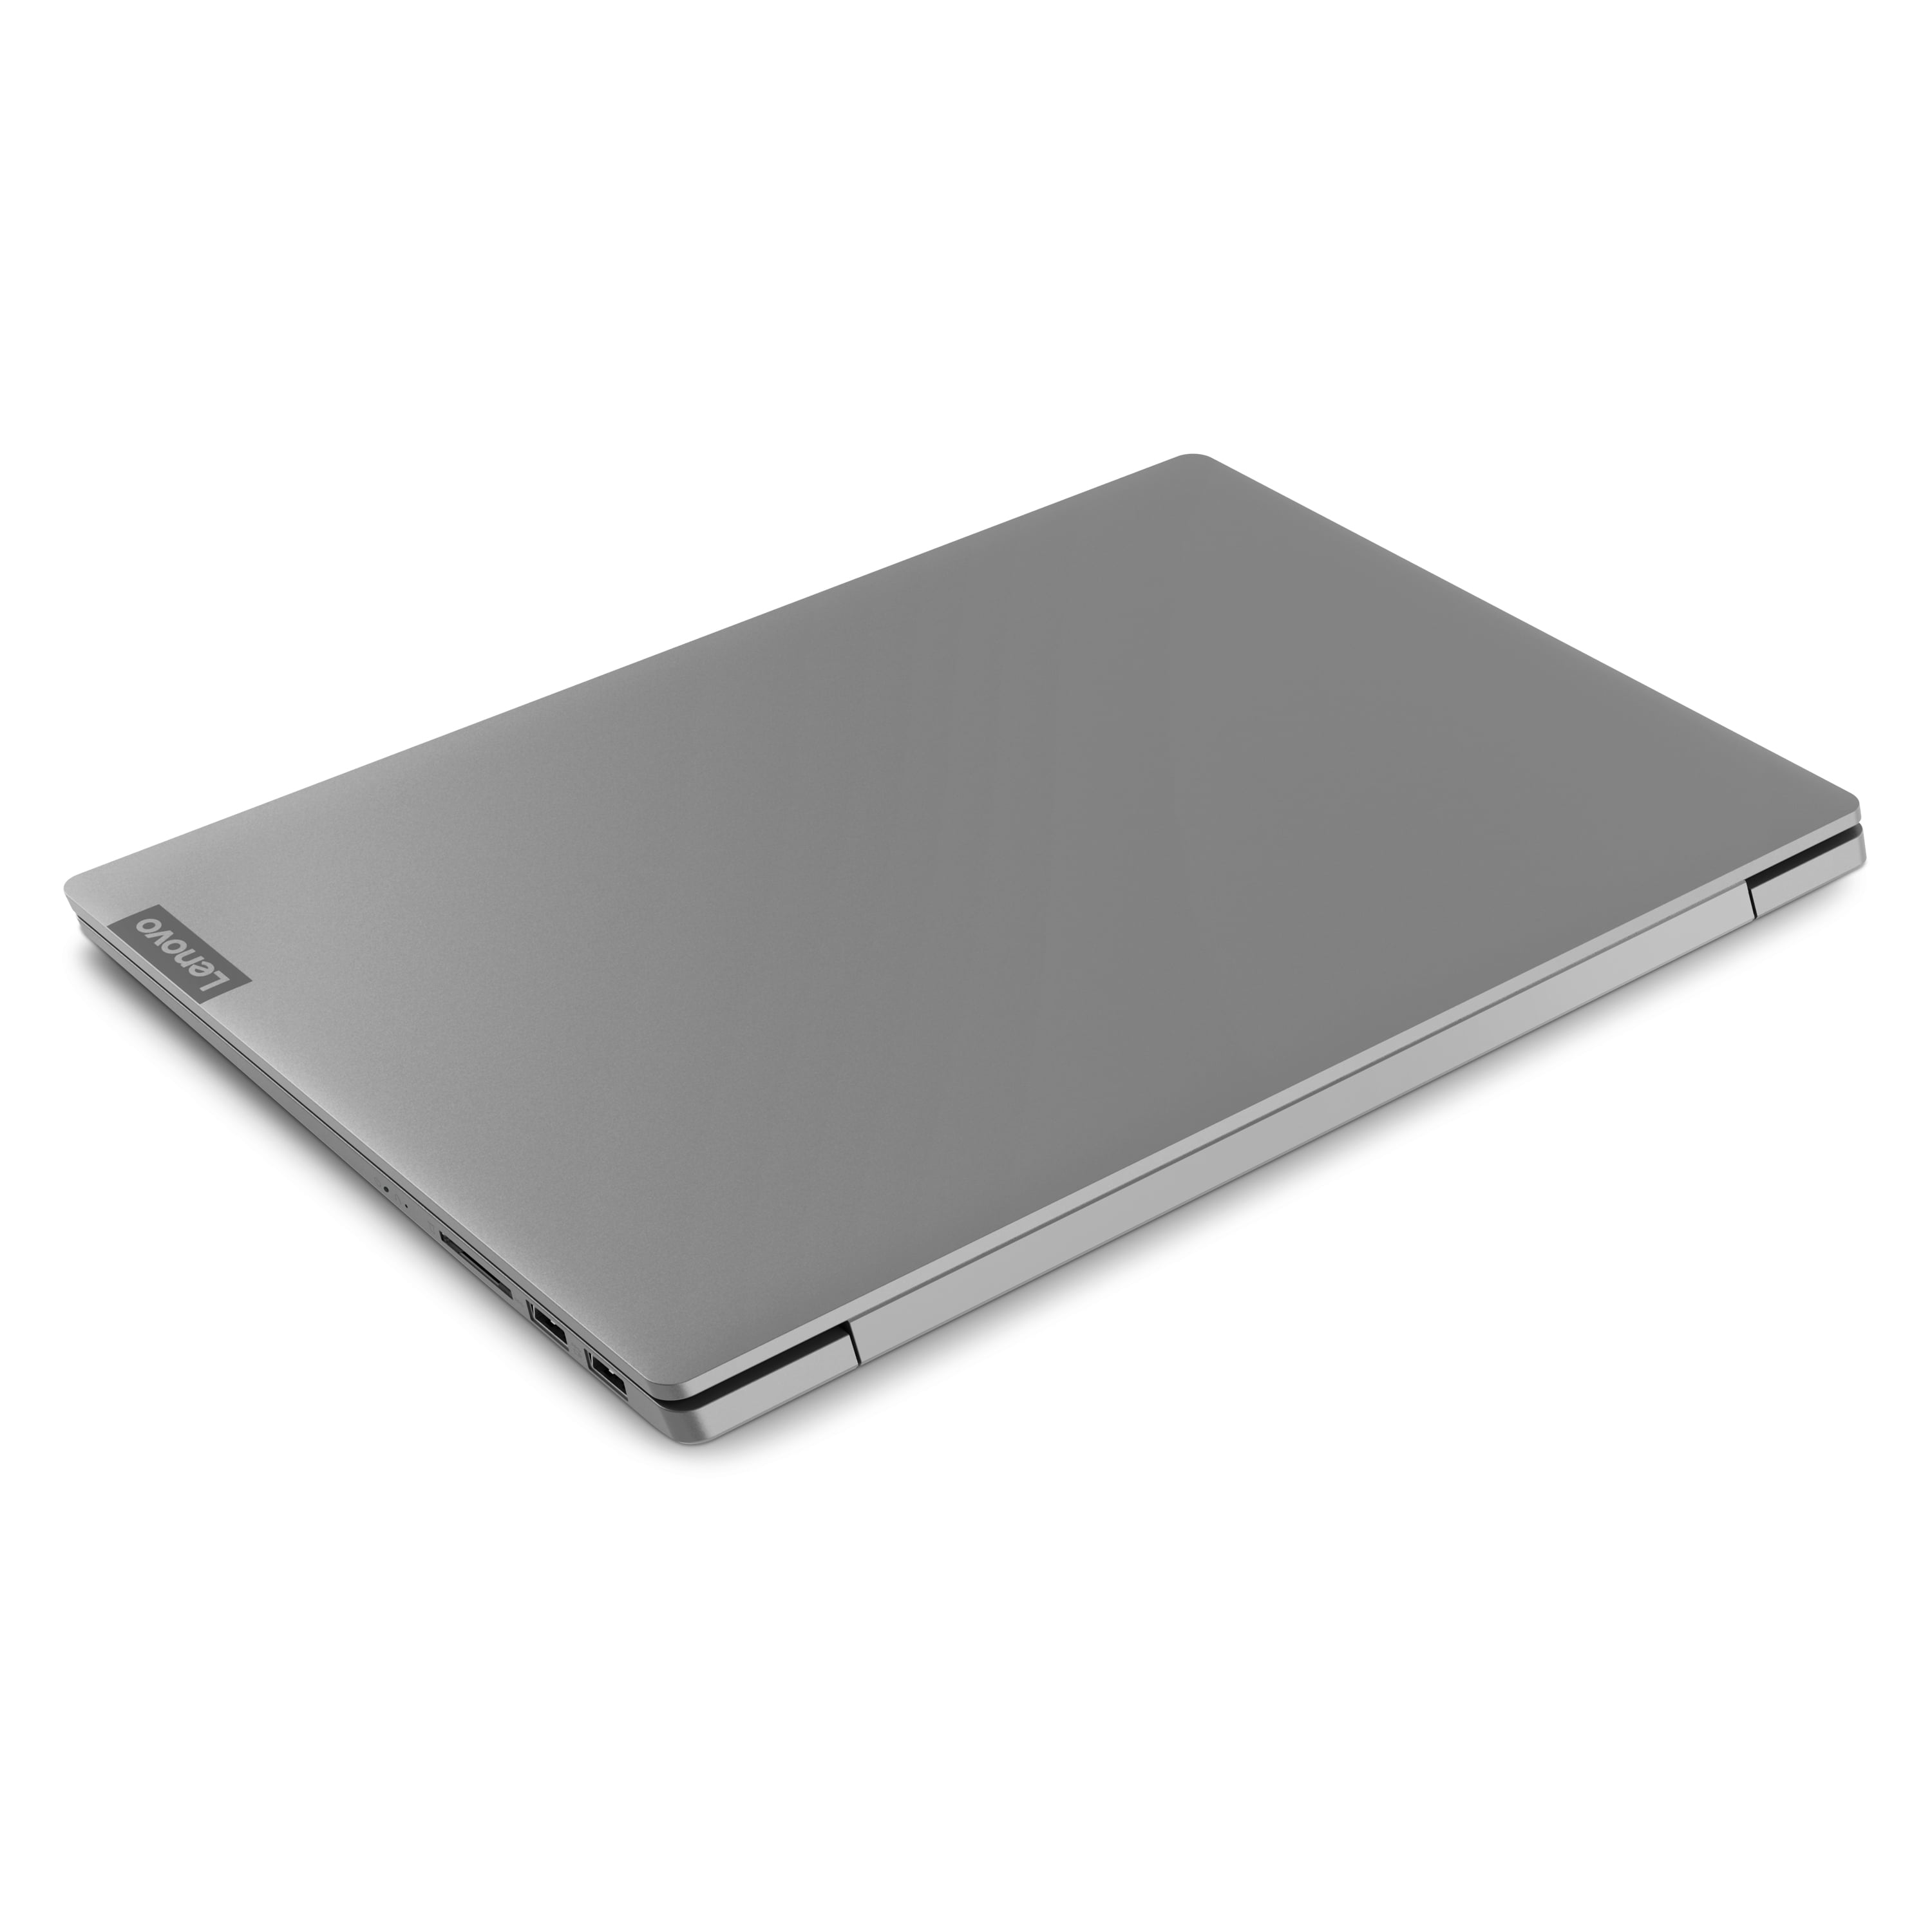 Lenovo ideapad S540 14.0